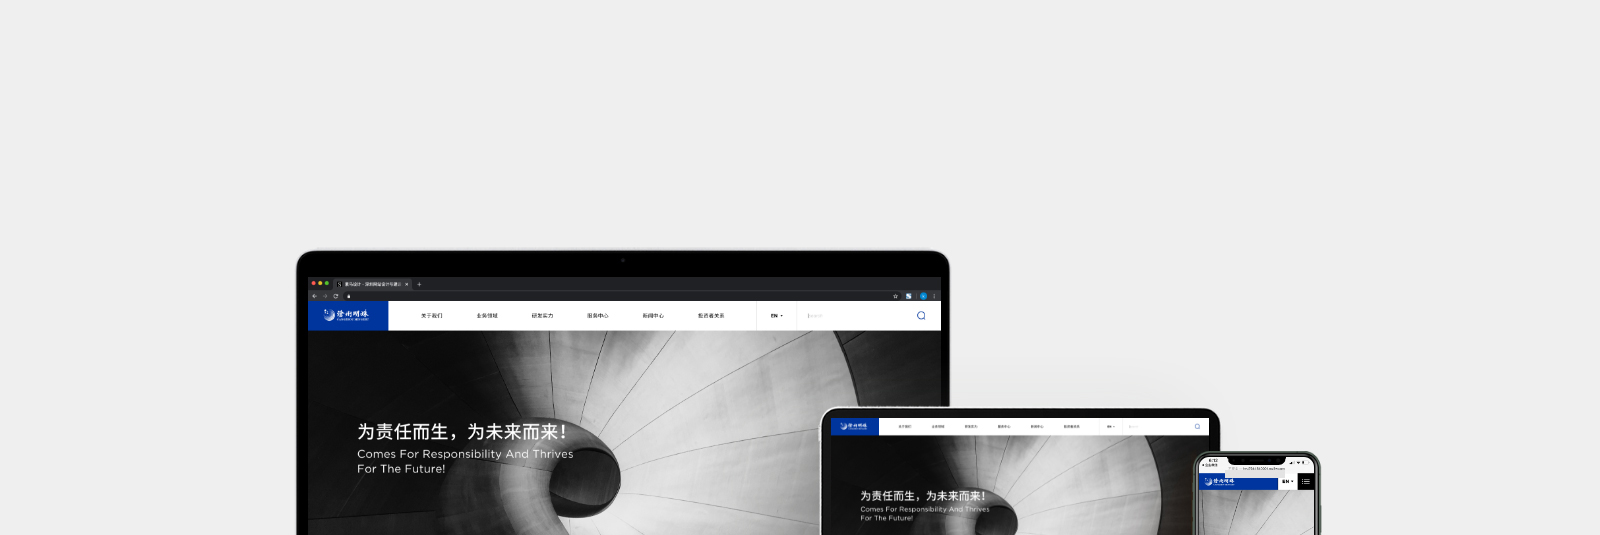 沧州明珠塑料股份有限公司官网网站0-素马设计作品